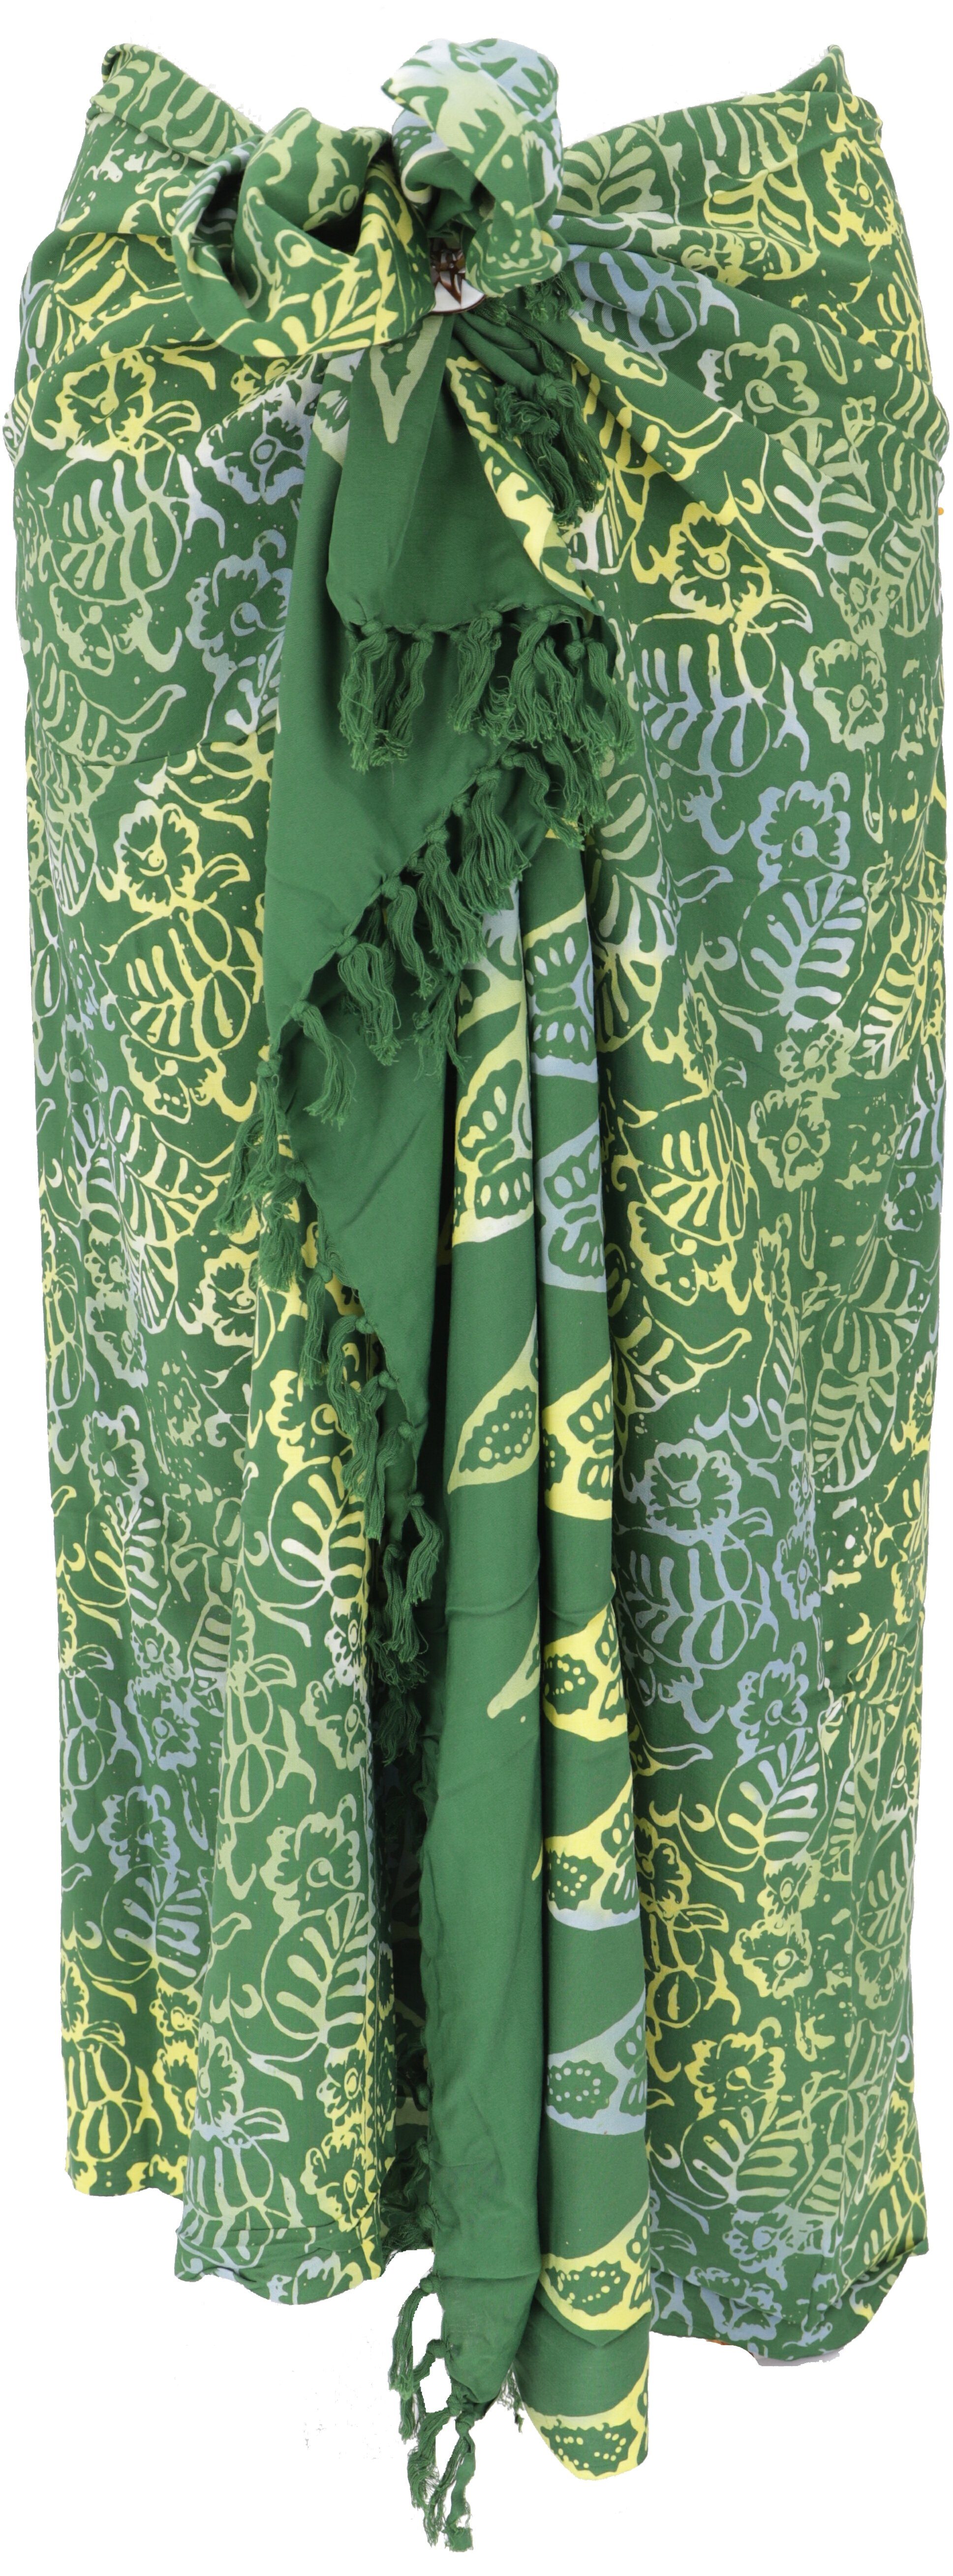 Sarong, Guru-Shop Design Batik 39/grün Sarong Wandbehang, Bali Wickelrock,..